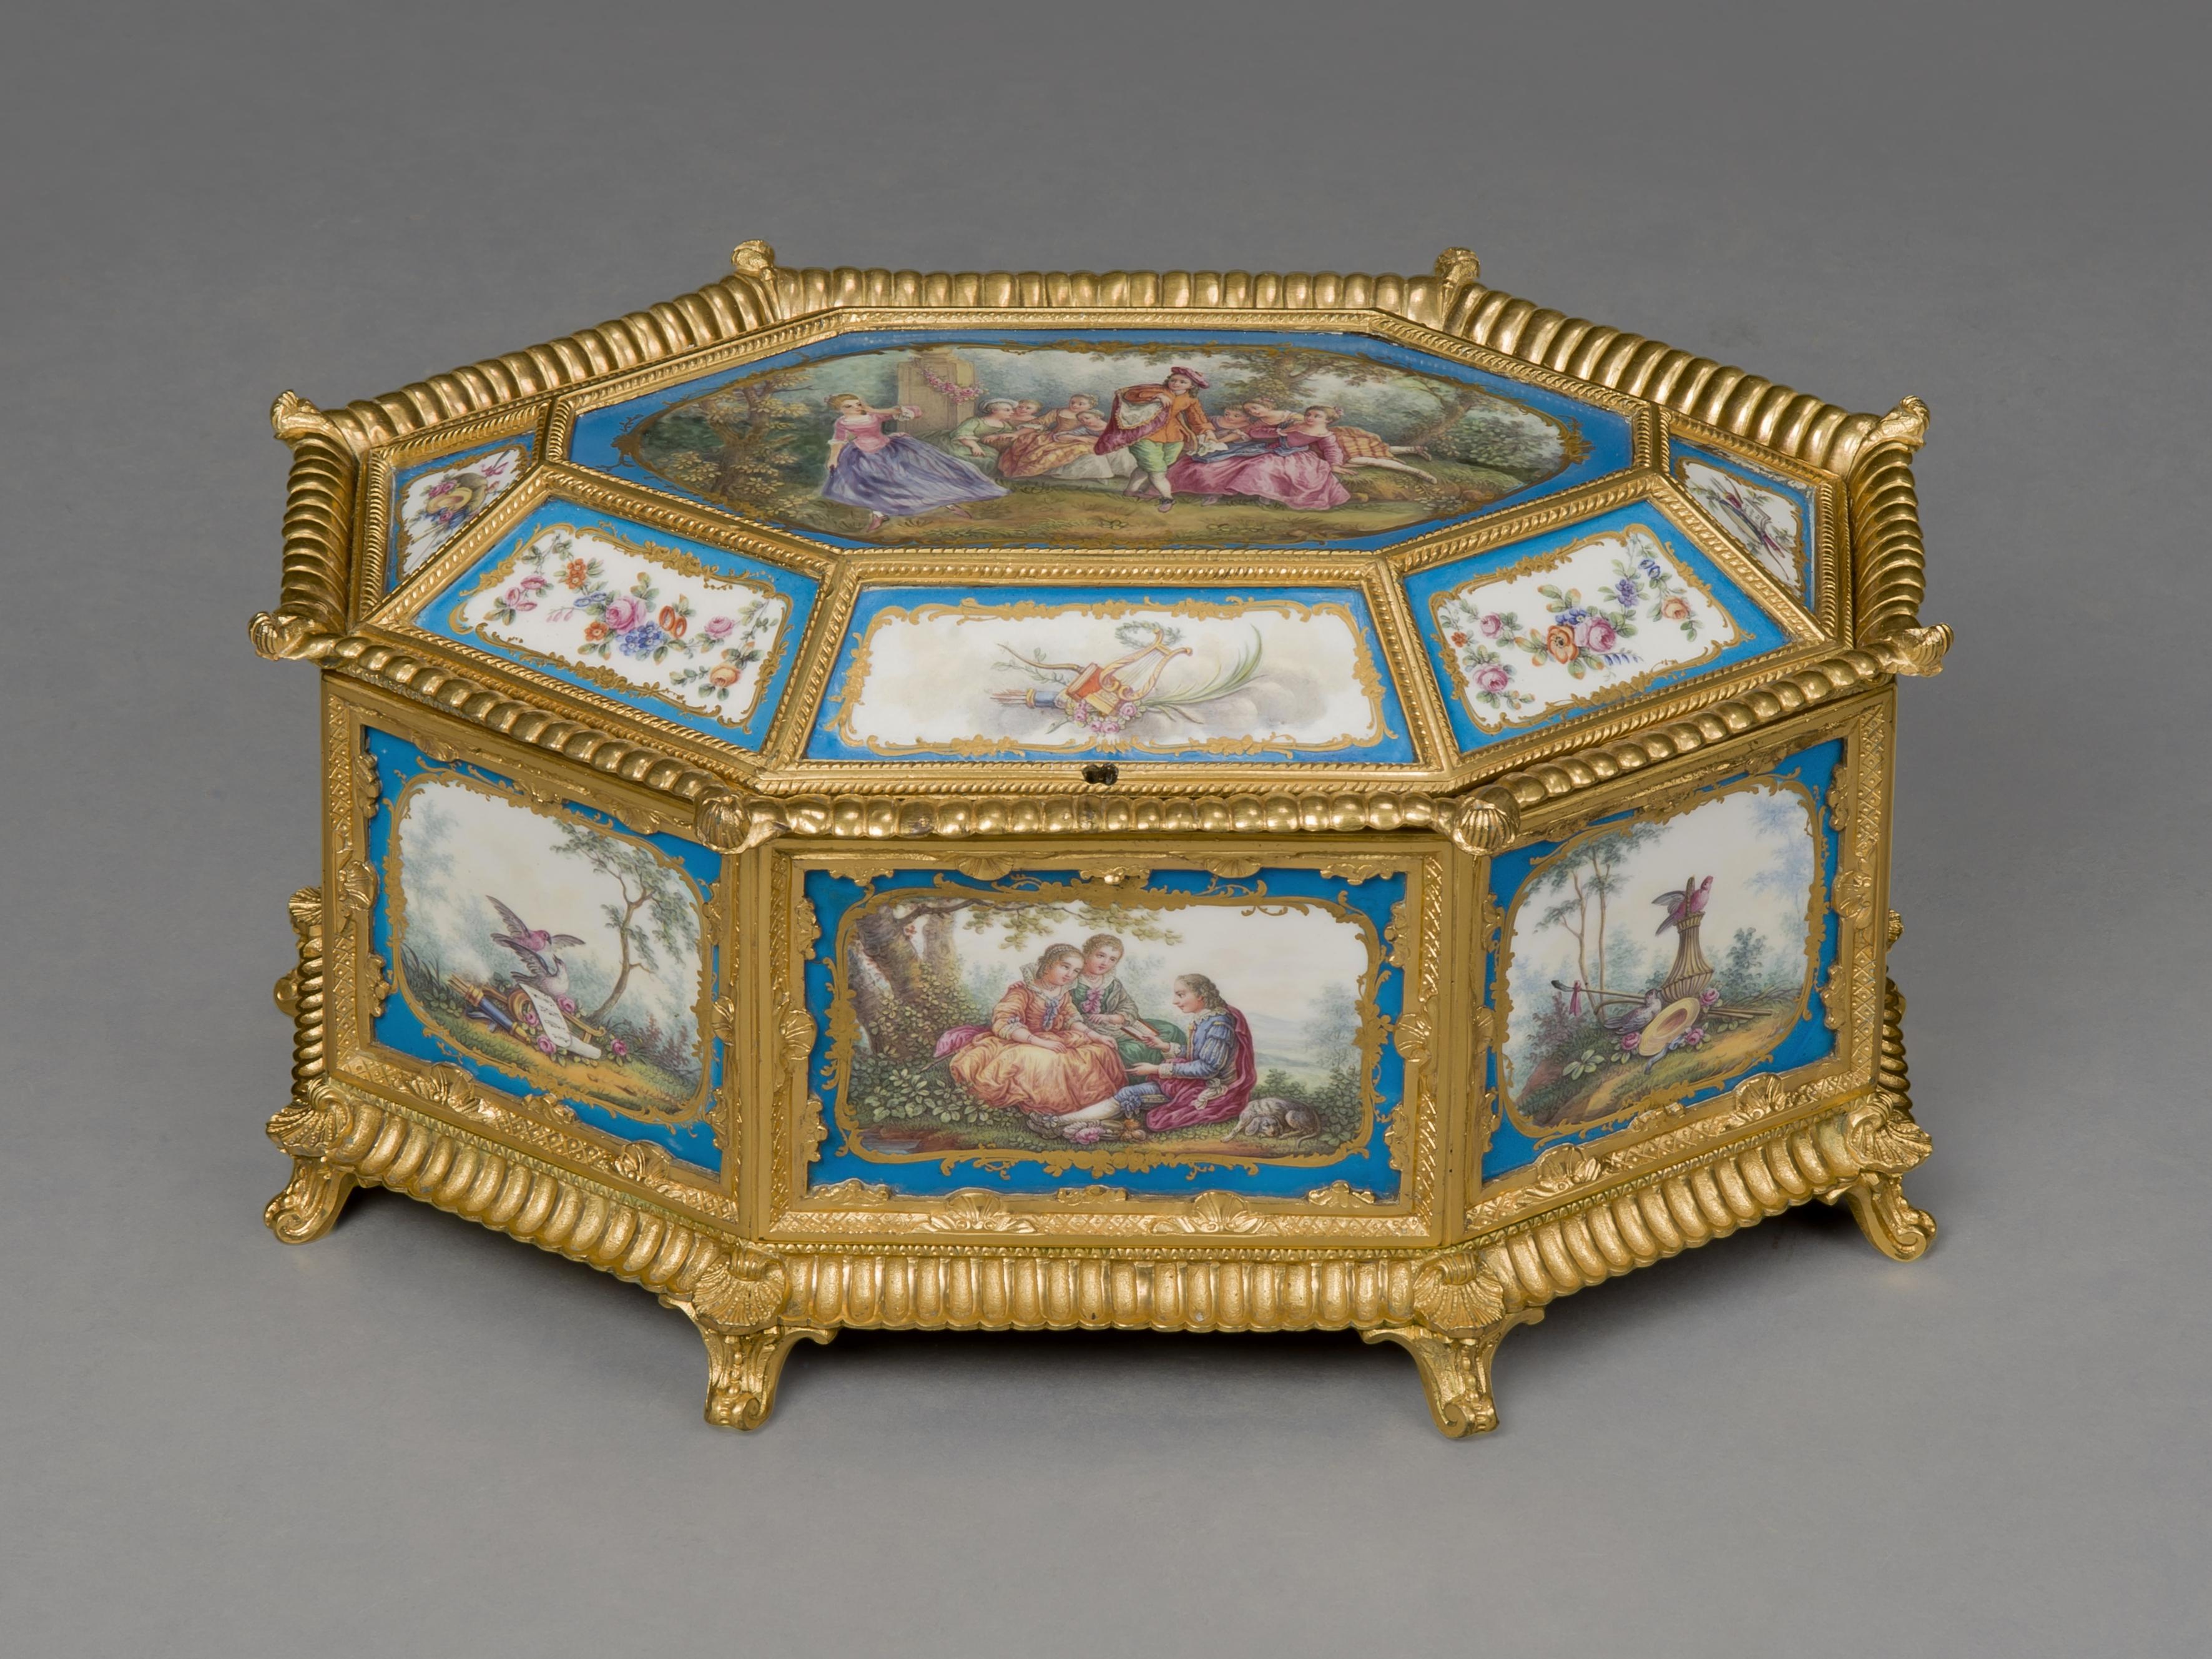 Boîte de table octogonale de style Louis XVI en bronze doré et porcelaine de style Sèvres.

Français, datant d'environ 1890.

Cette boîte en porcelaine fine et bronze doré présente un couvercle octogonal à charnière centré sur une plaque de